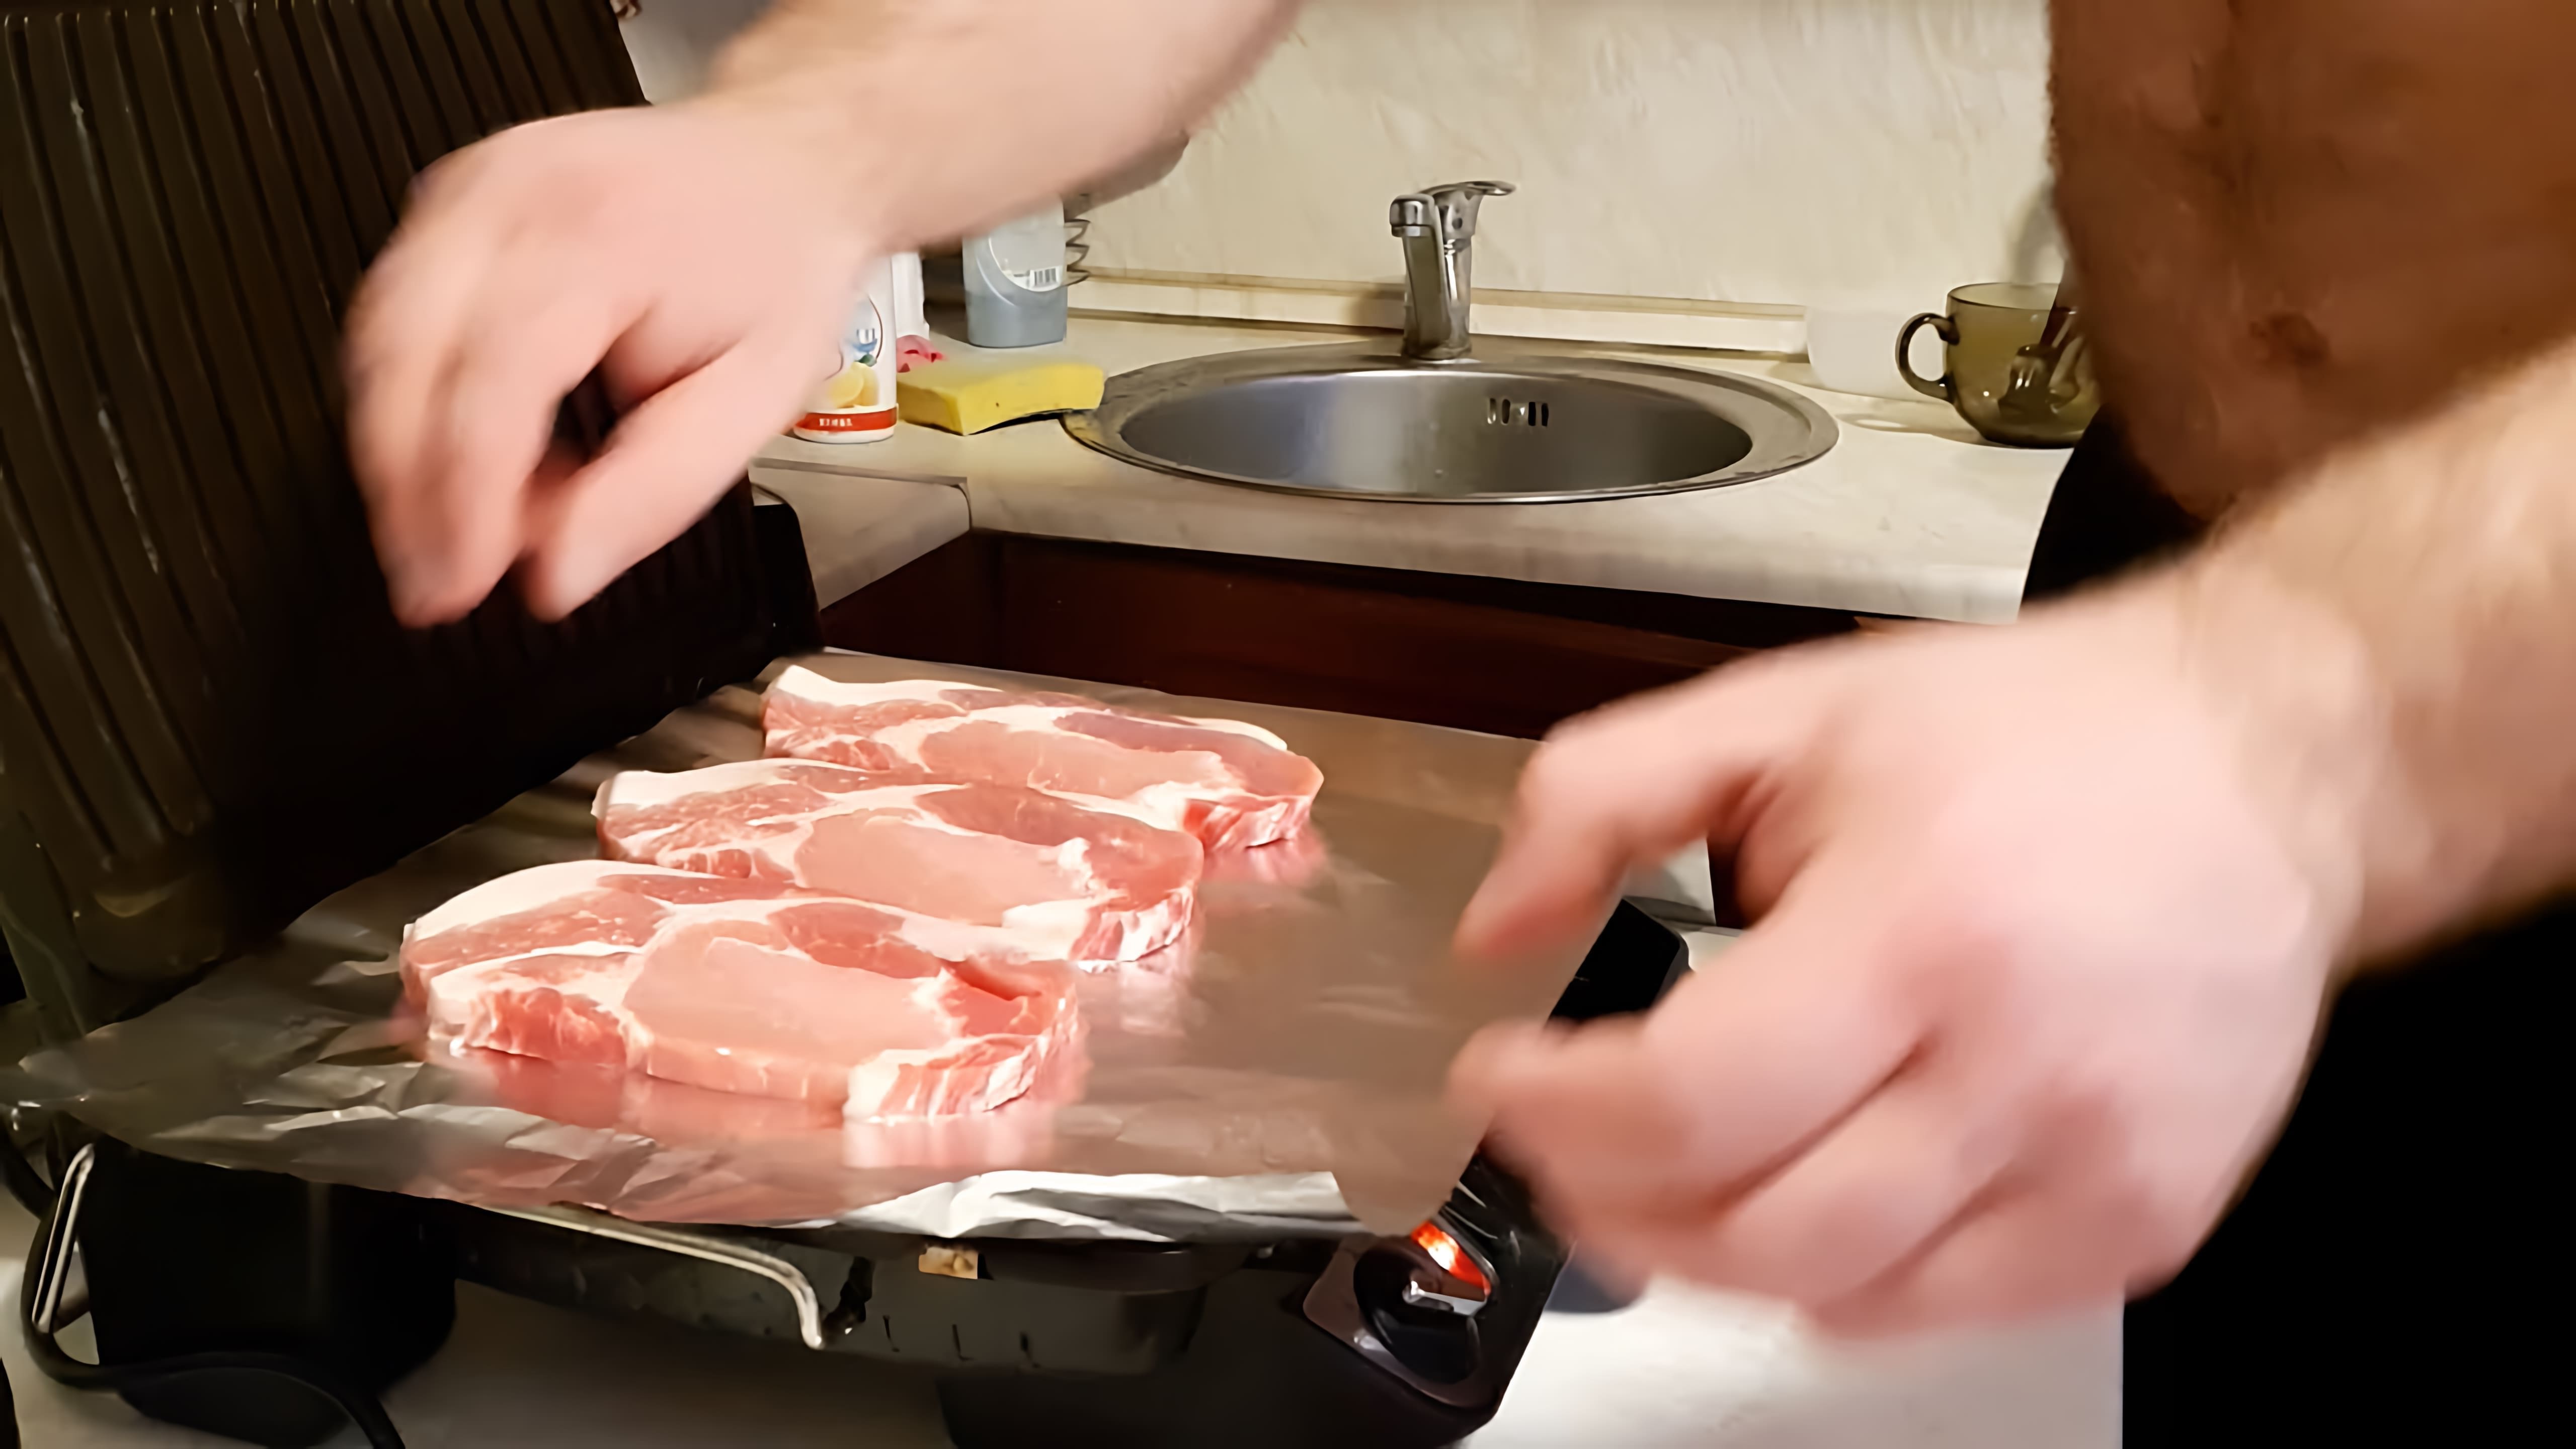 В данном видео демонстрируется процесс приготовления мяса на гриле без использования жира и мойки гриля